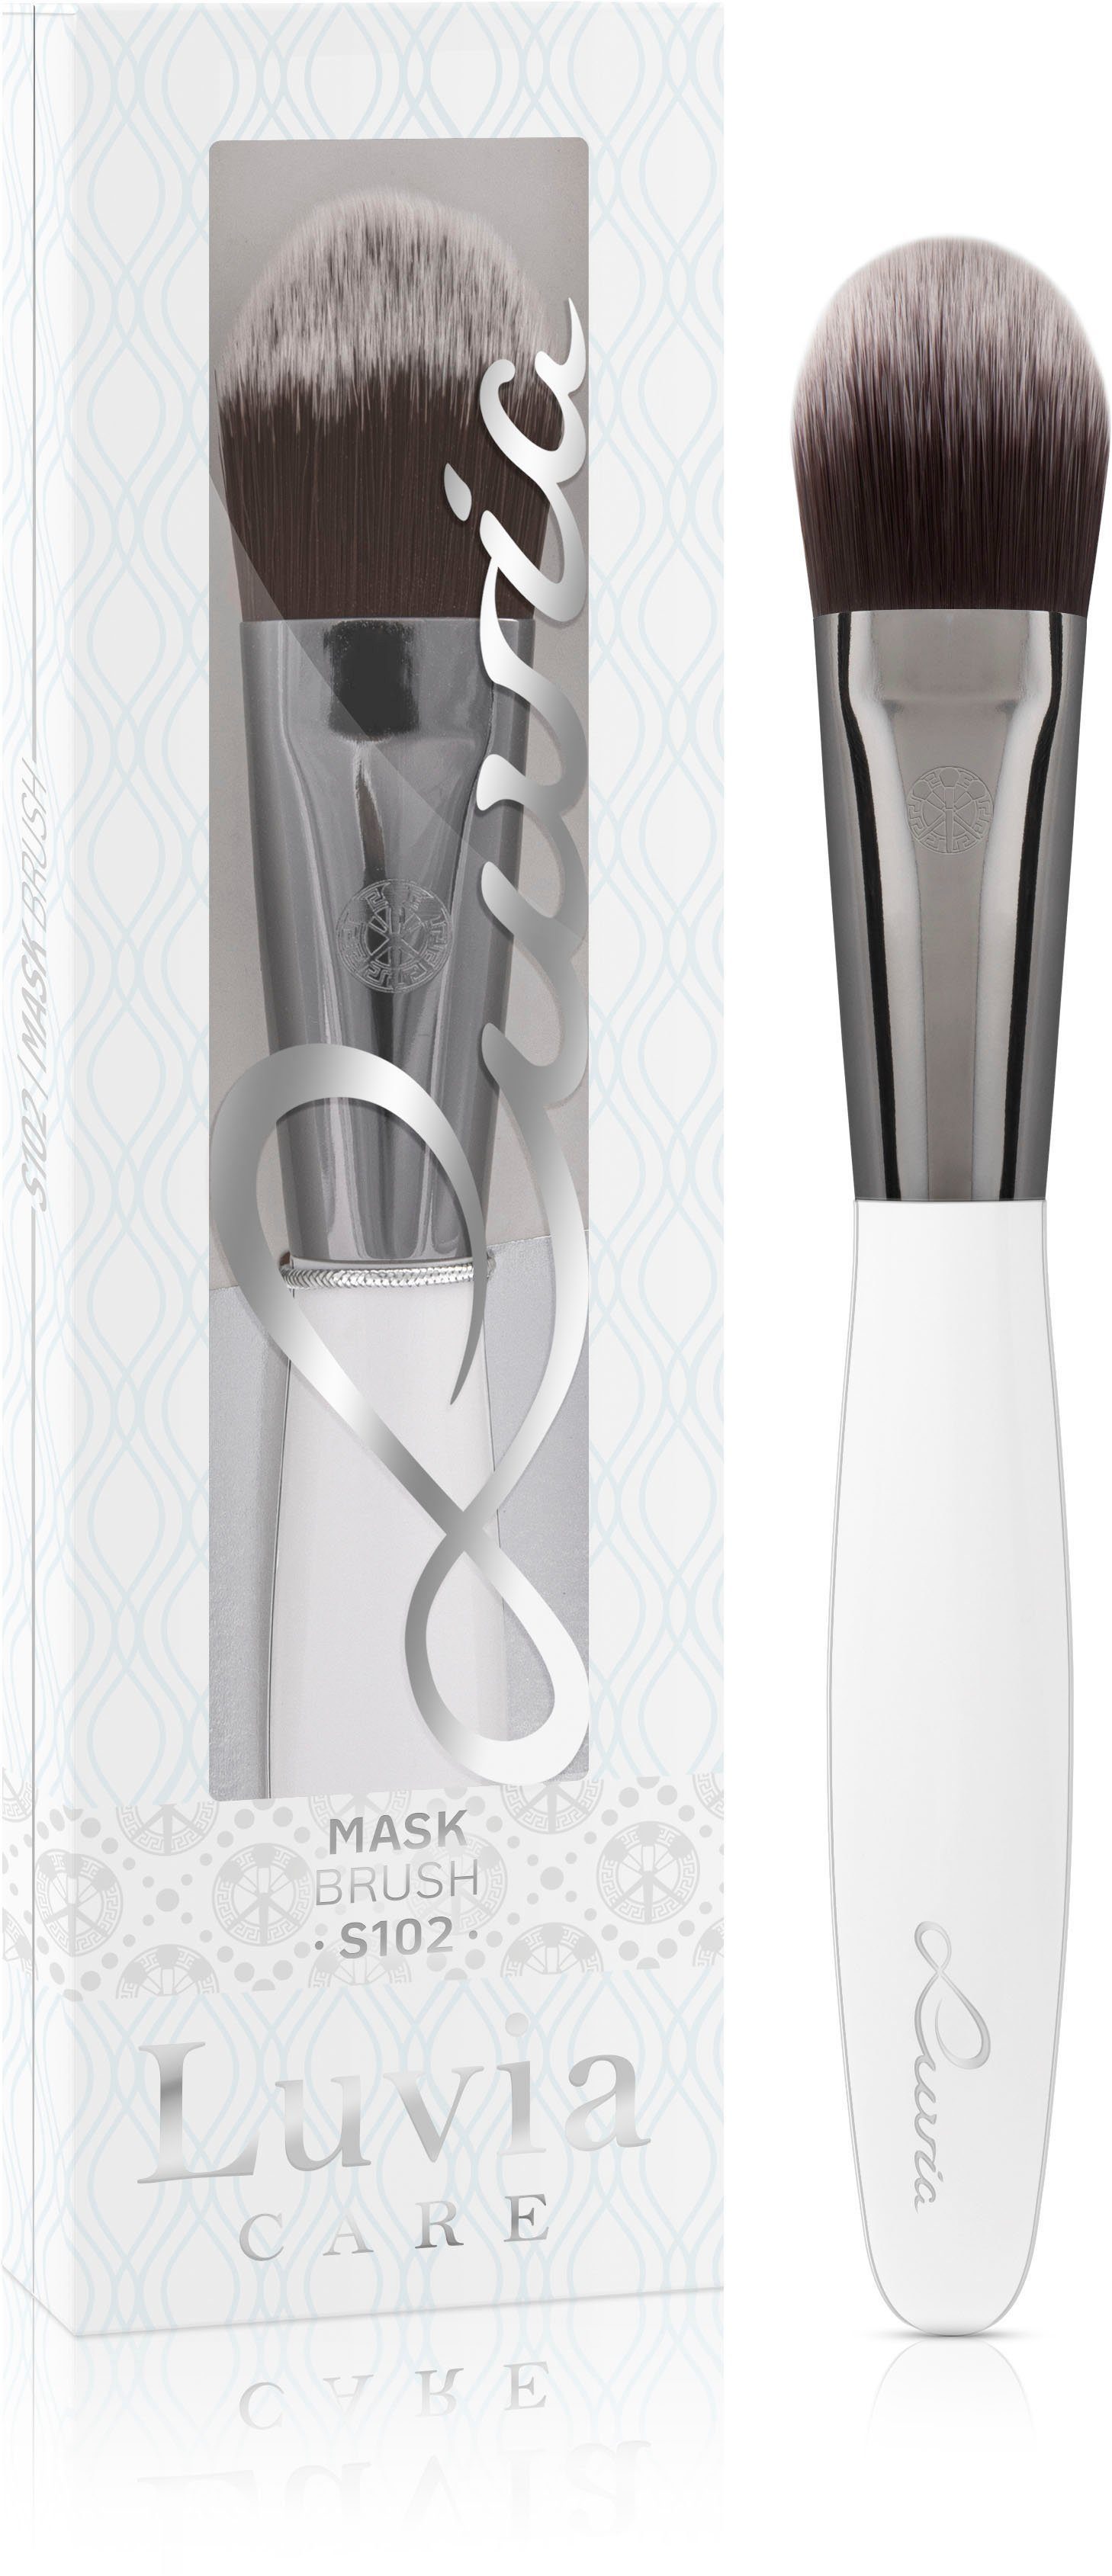 Cosmetics Luvia Mask Maskenpinsel Brush